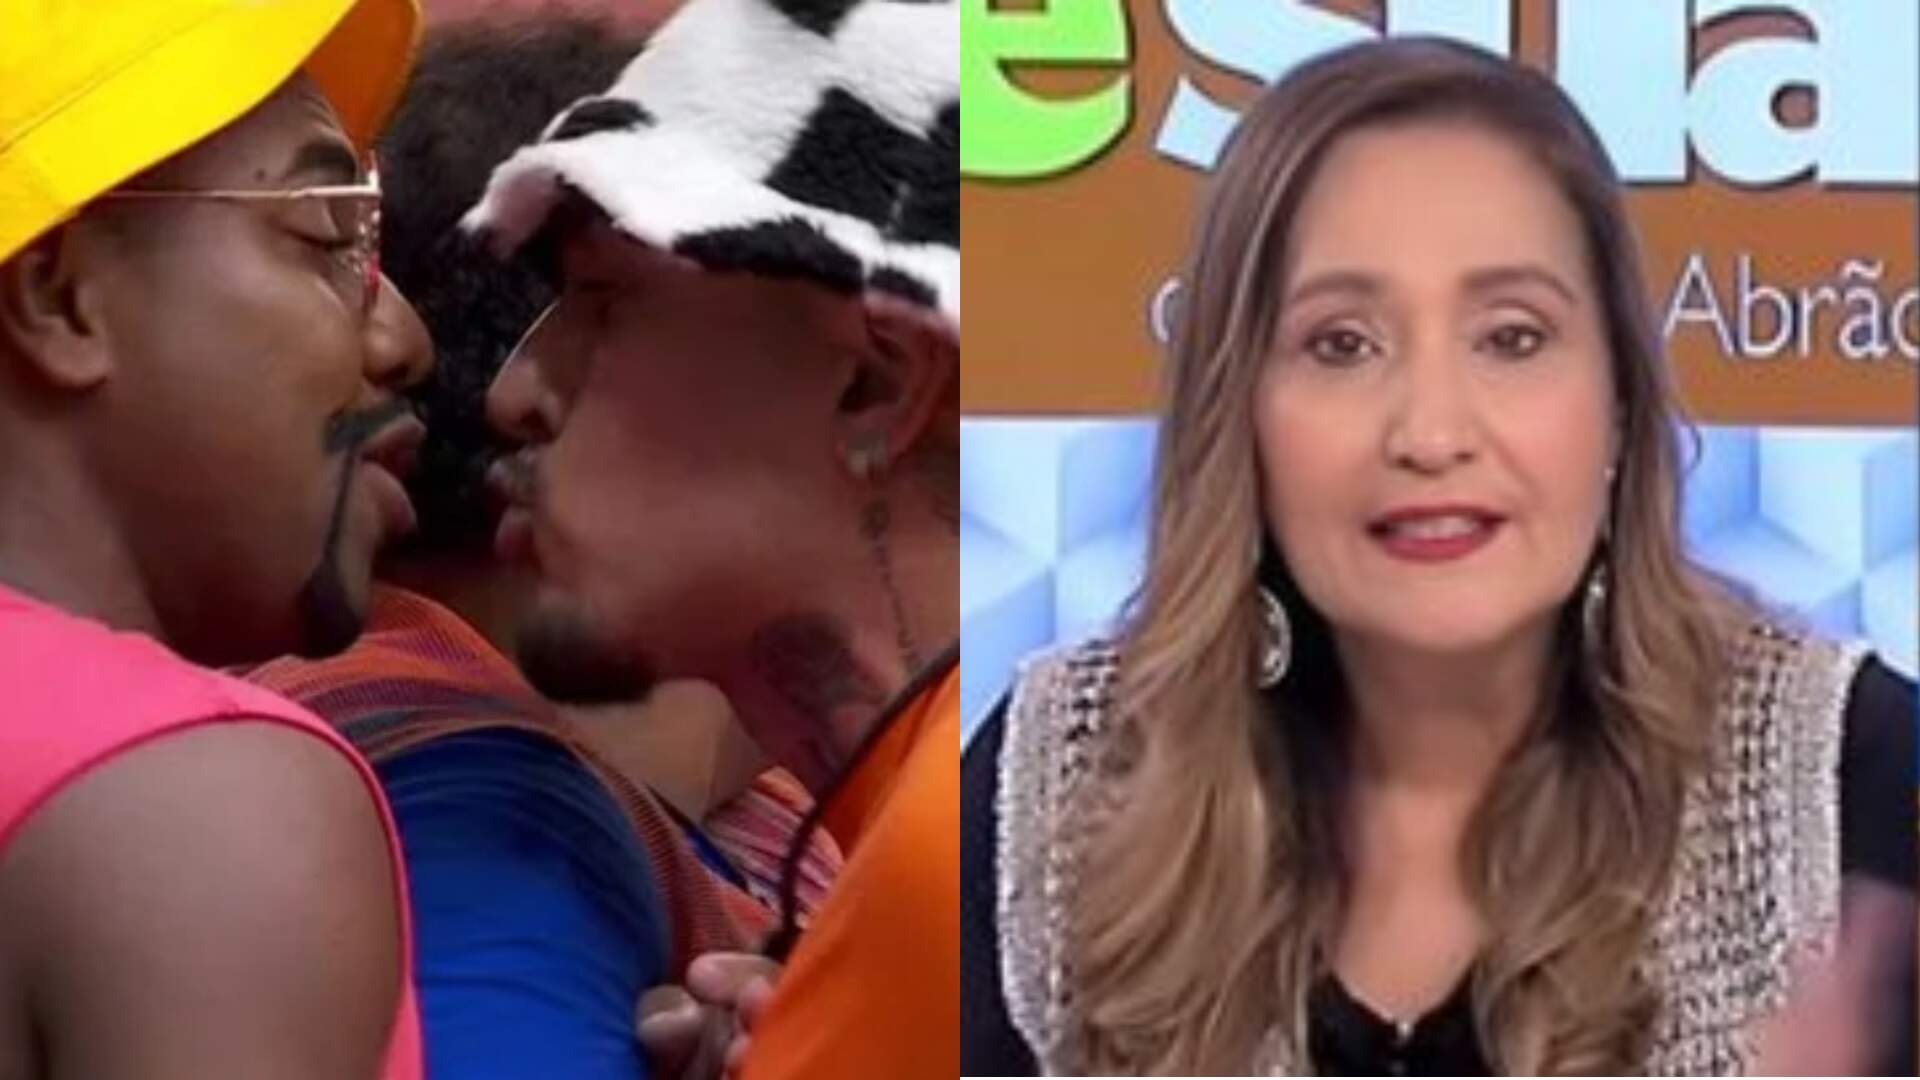 BBB 24: Revoltada, Sônia Abrão opina em discussão envolvendo Davi Brito e MC Bin Laden: “Ta igual ‘A Fazenda'” - Metropolitana FM